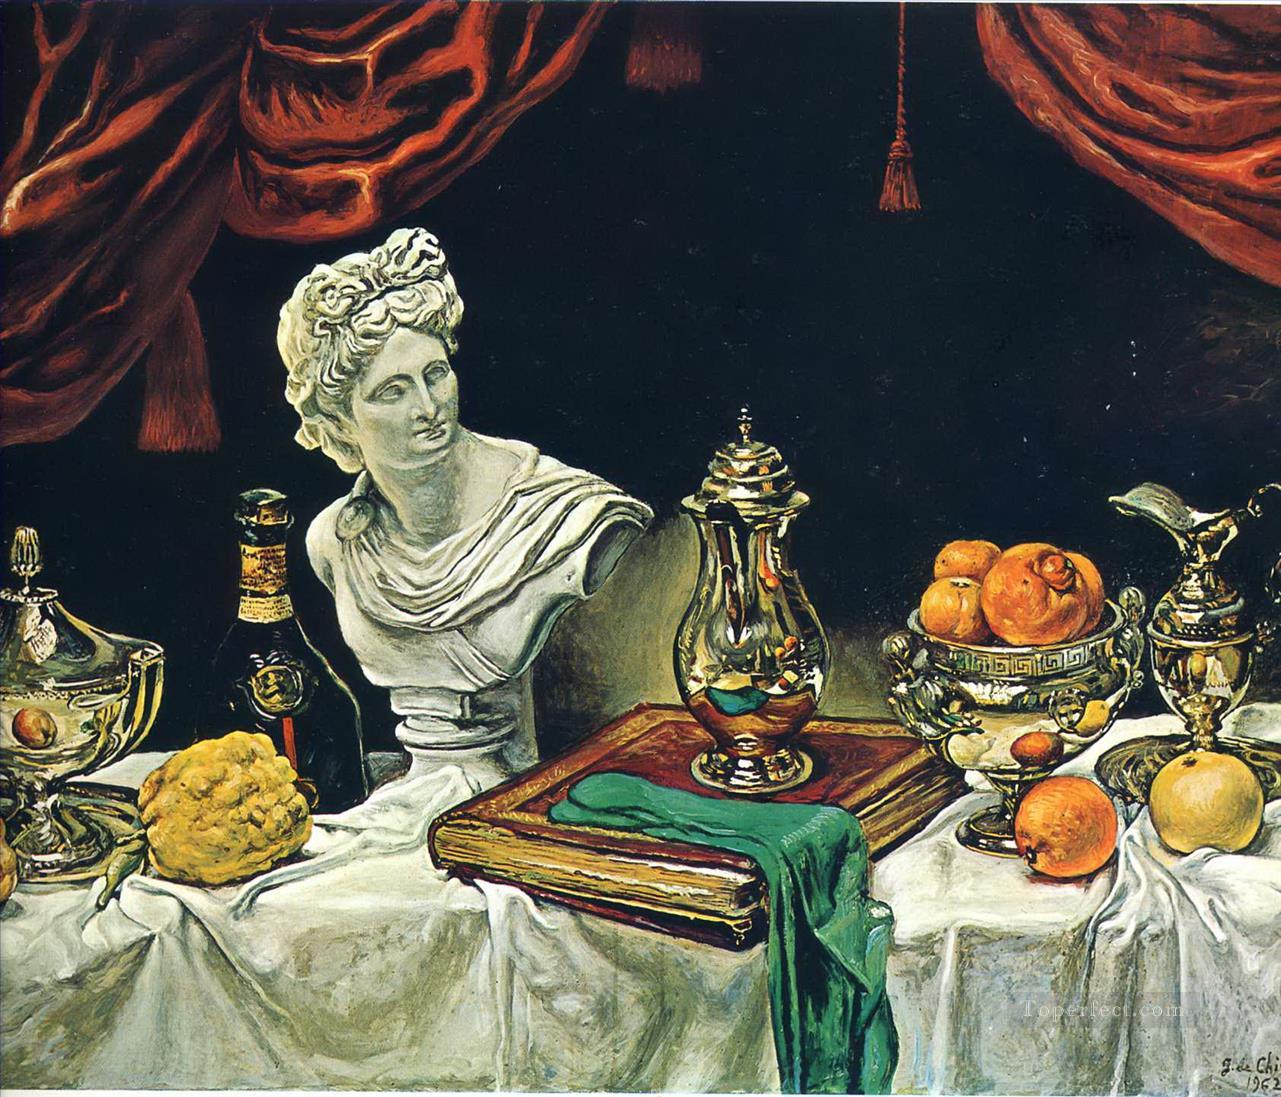 銀器のある静物画 1962年 ジョルジョ・デ・キリコ シュルレアリスム油絵